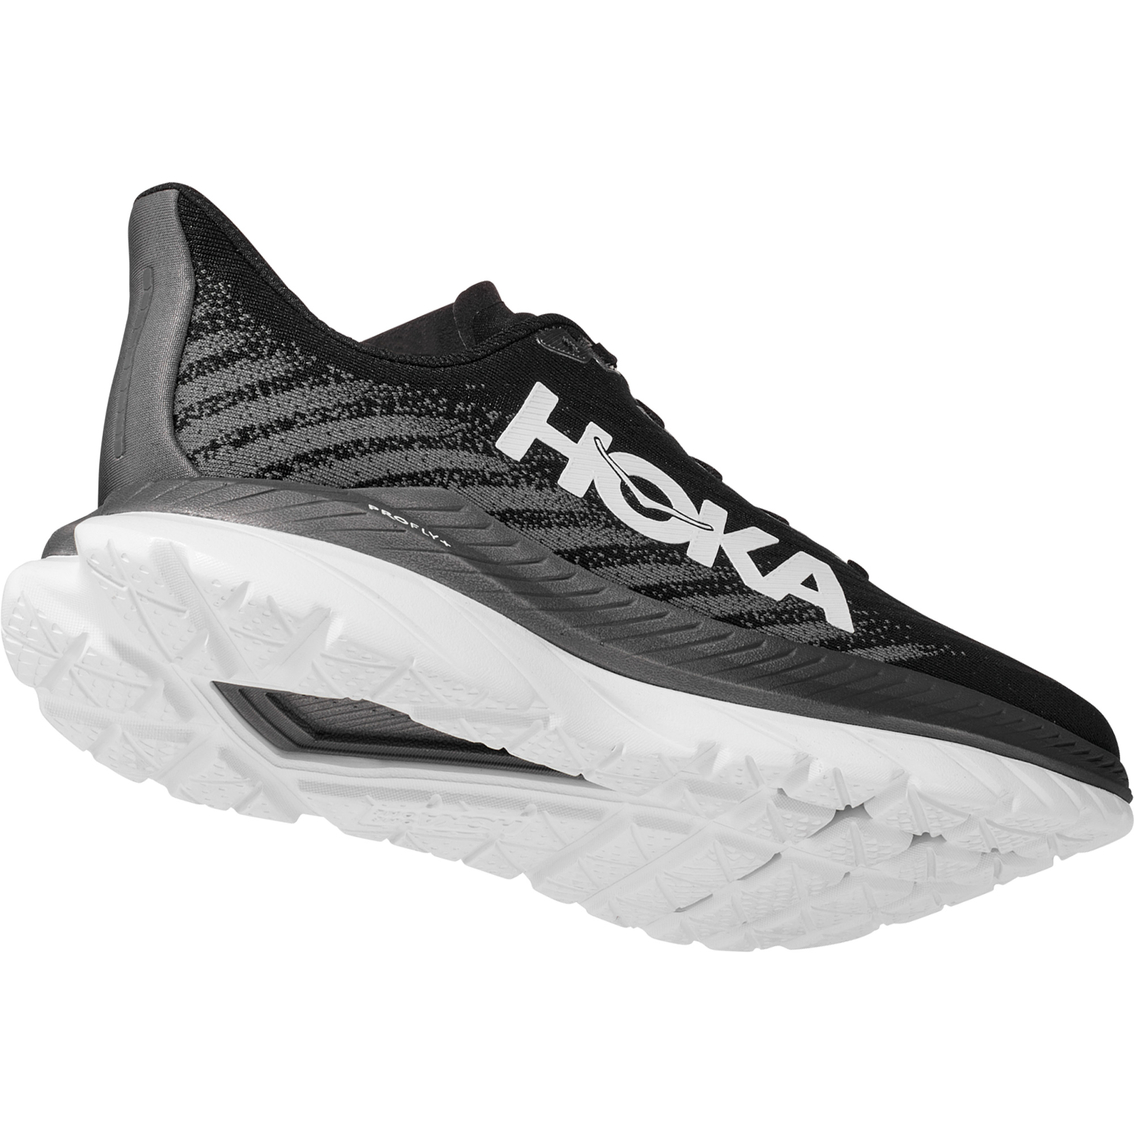 Hoka Men's Mach 5 Running Shoes - Image 5 of 7